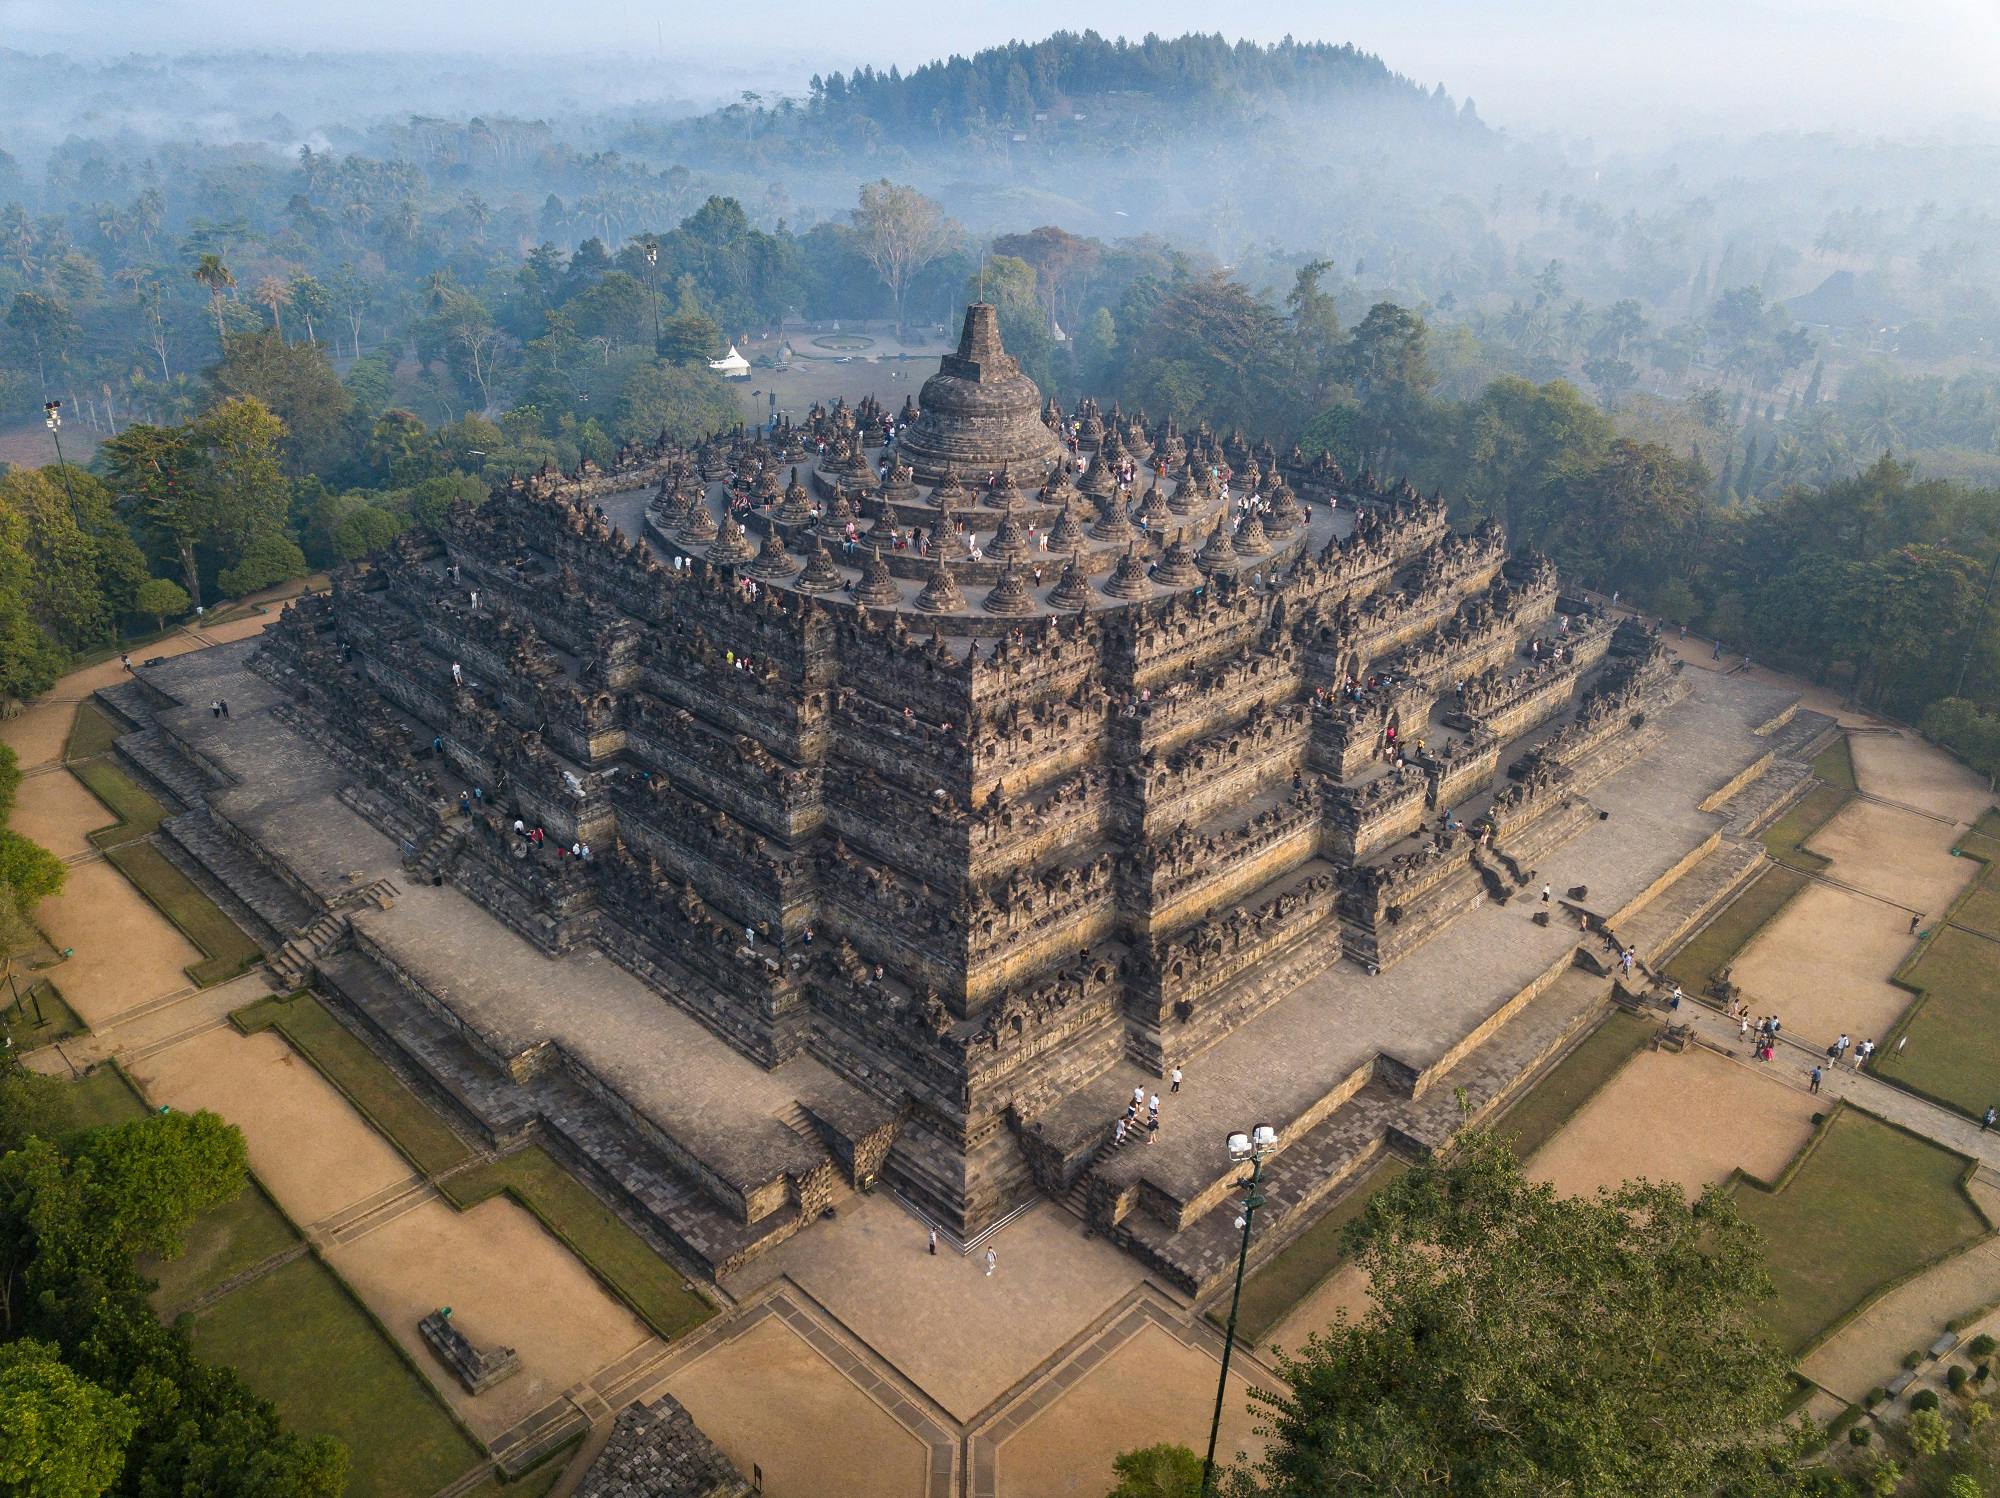 Eintrittskarte für den buddhistischen Tempel Borobudur